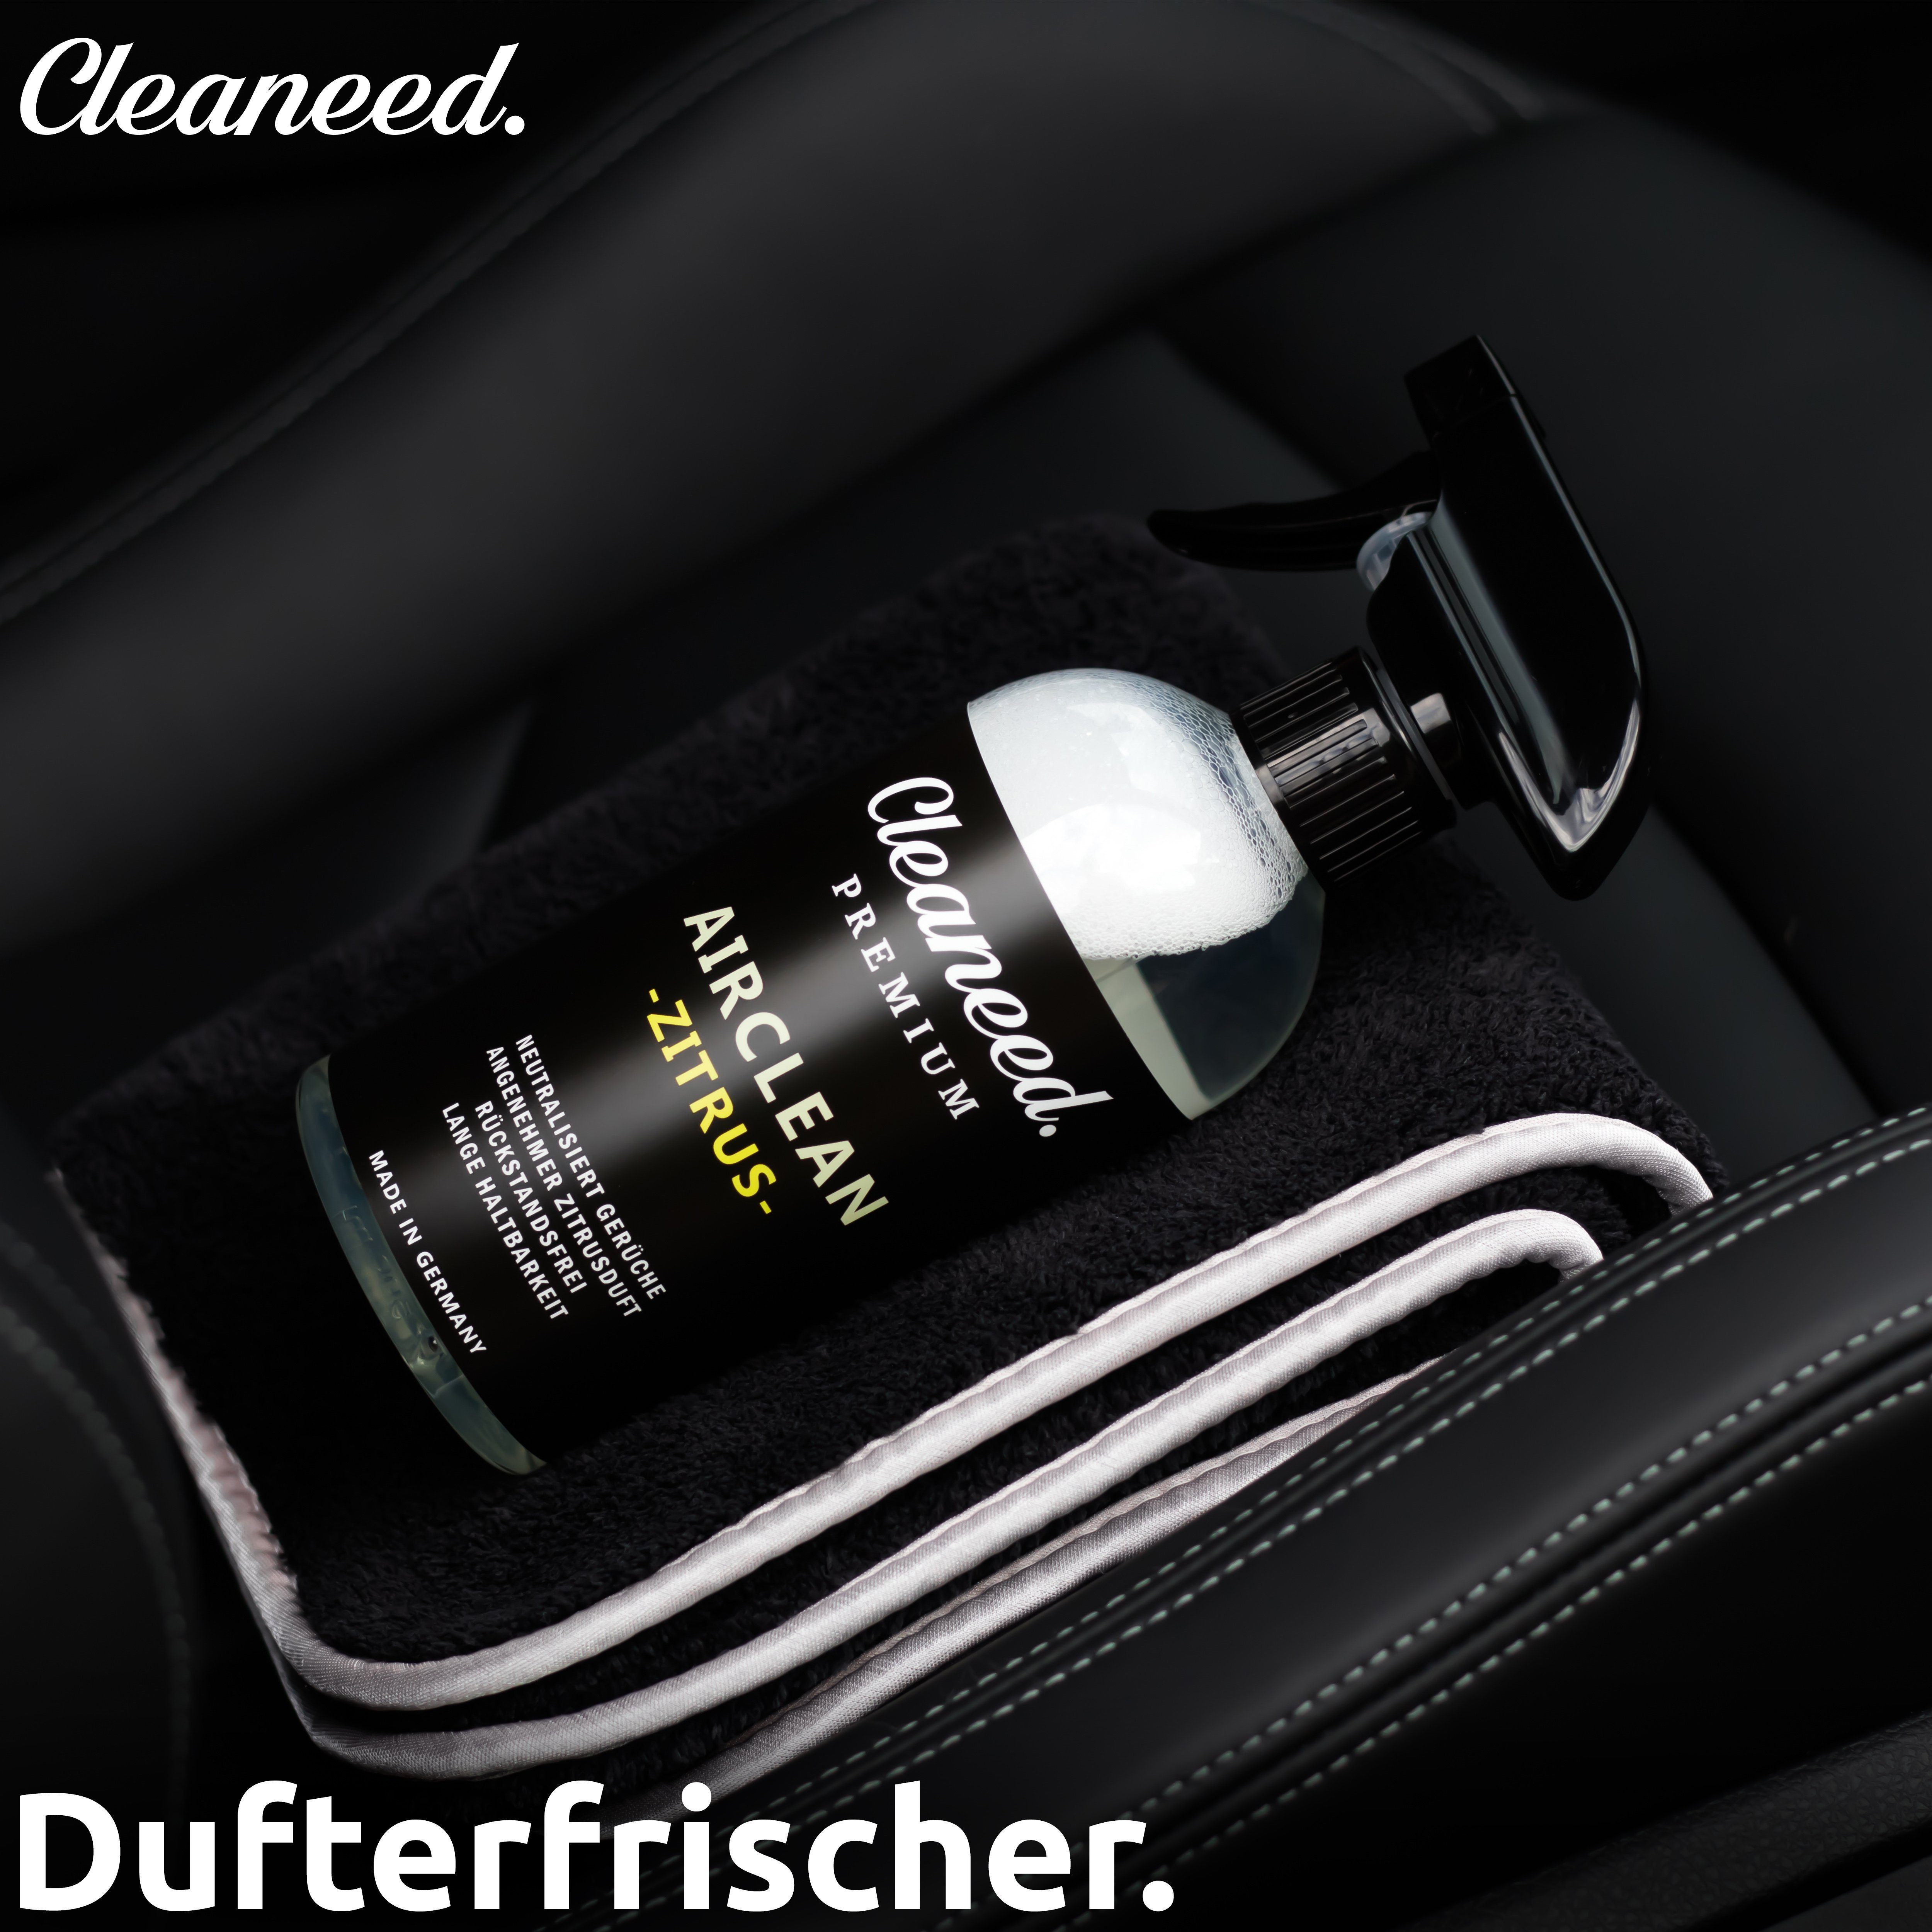 Premium Cockpit-Reiniger – Cleaneed Airclean Rauchgeruch Neuwagenduft) Zitrus (Made in Entferner, Germany